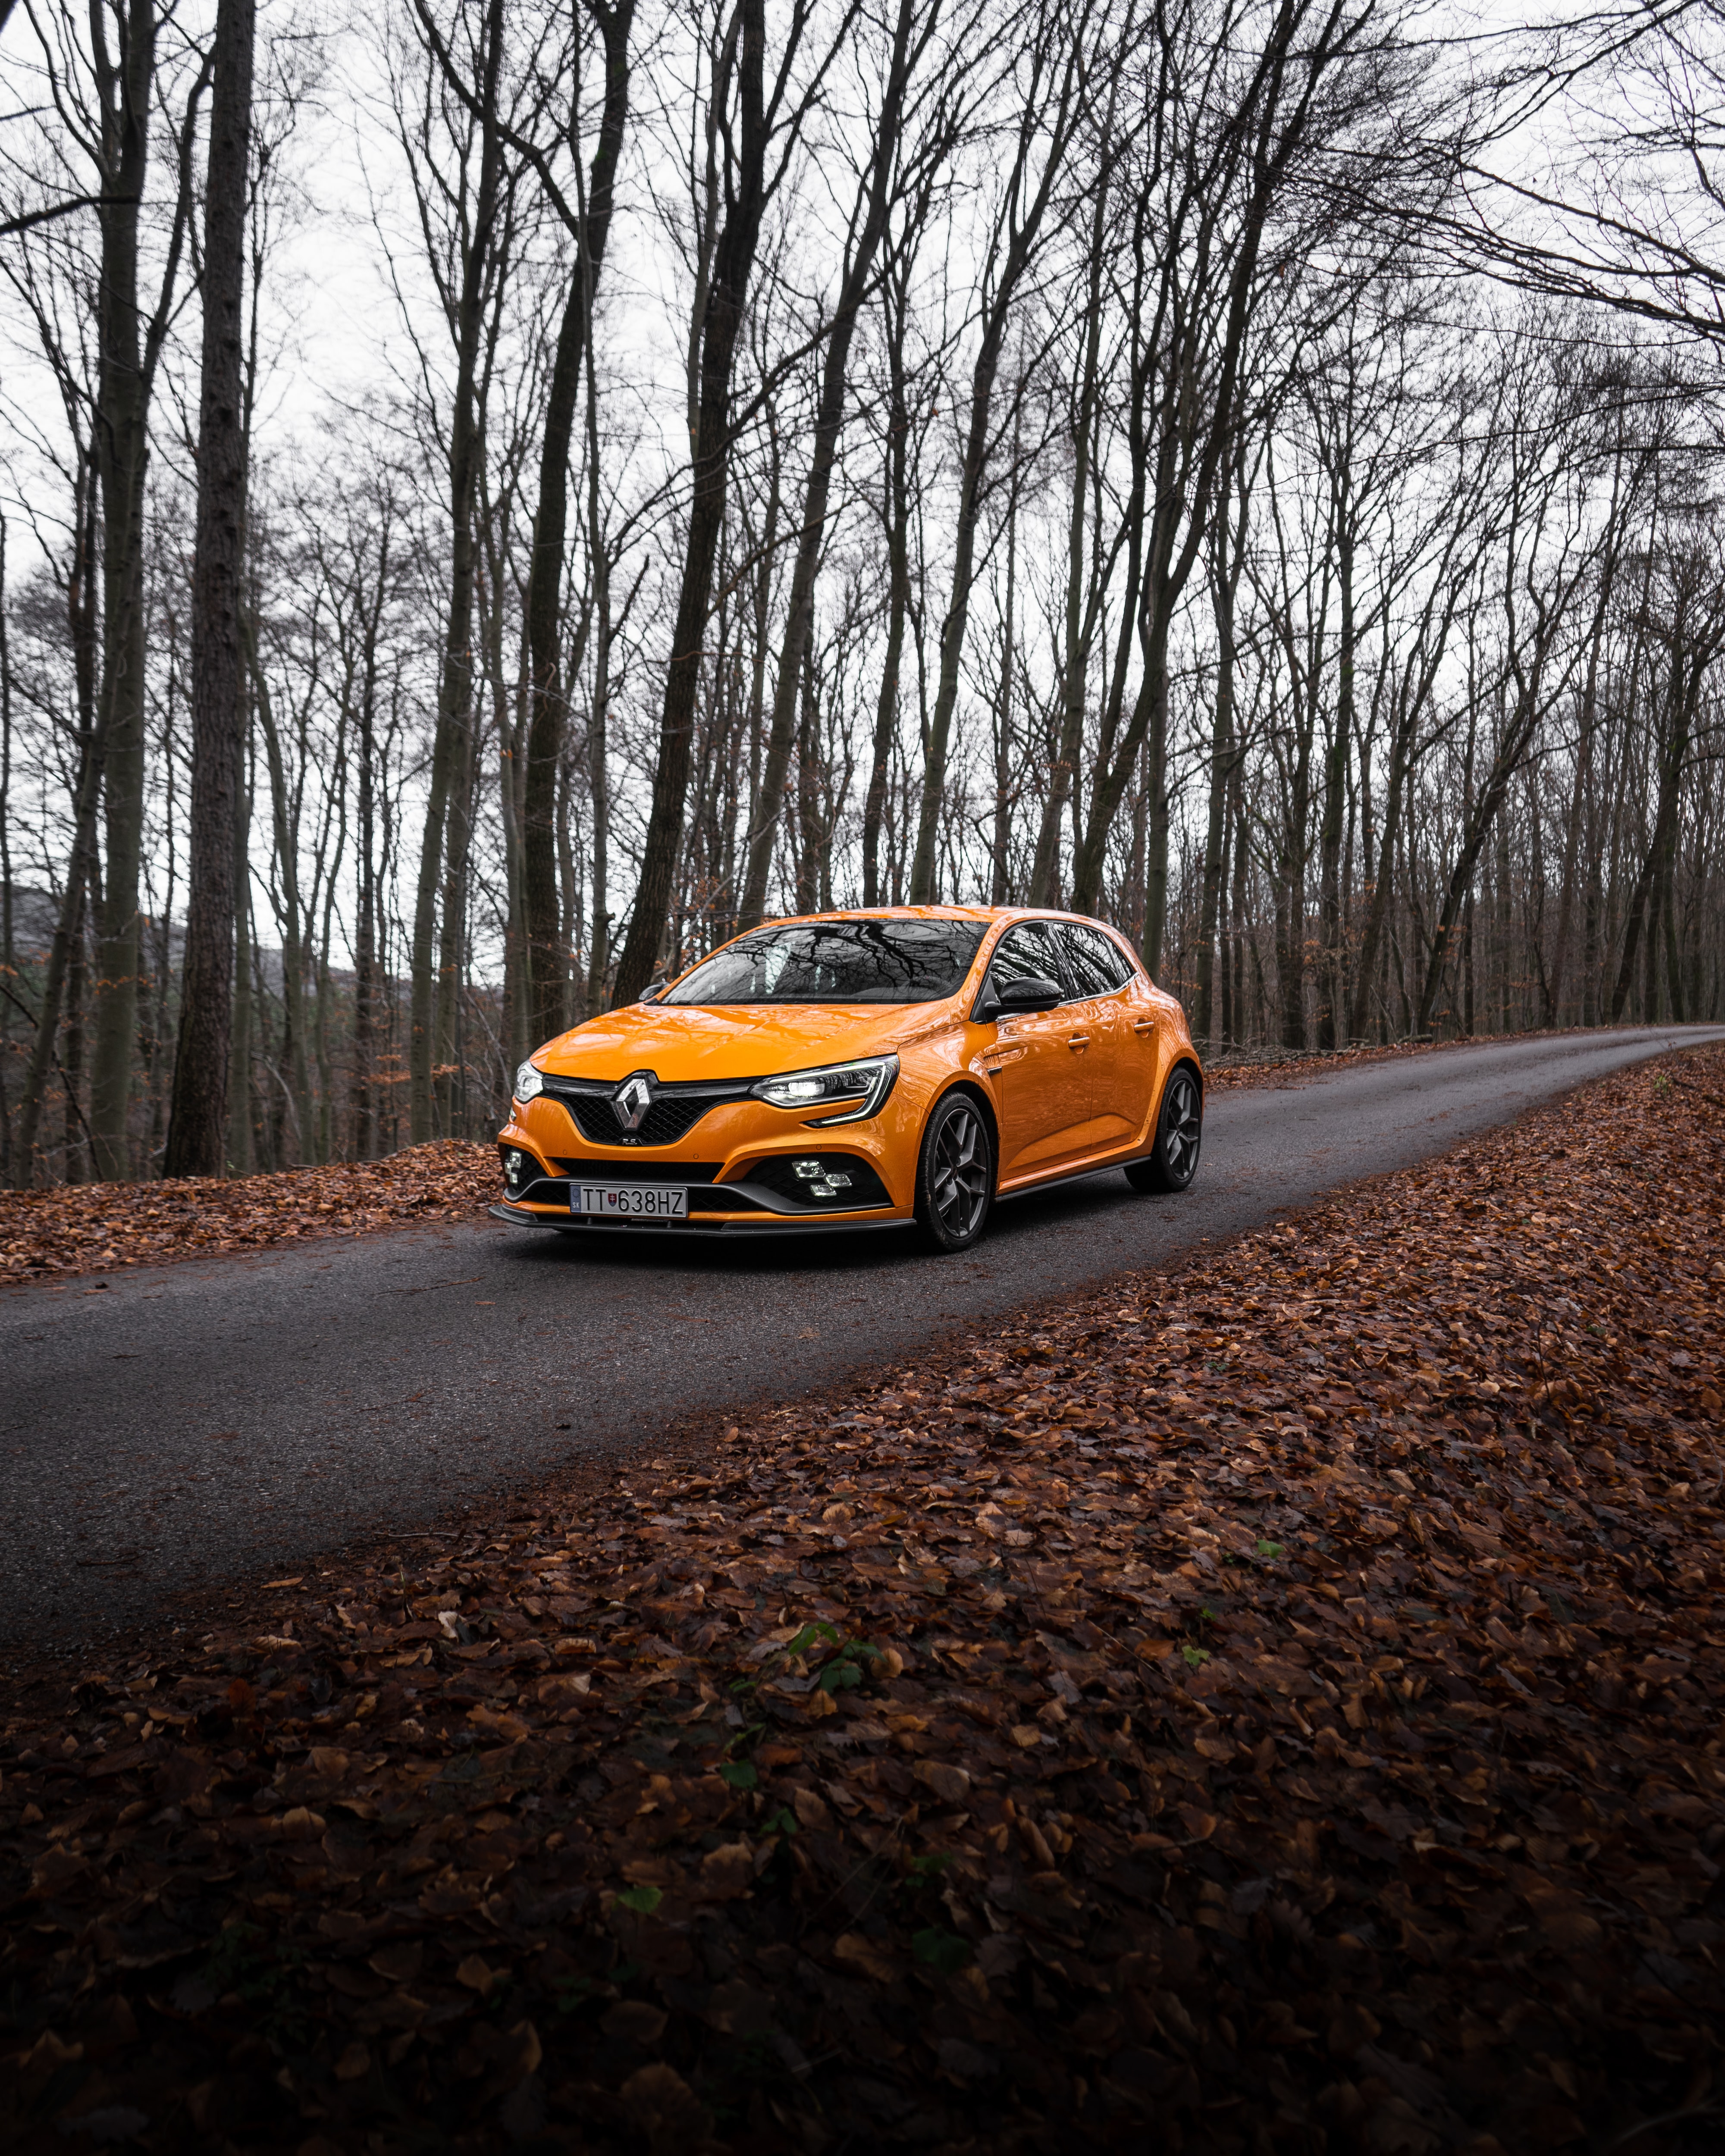 Renault HD photos